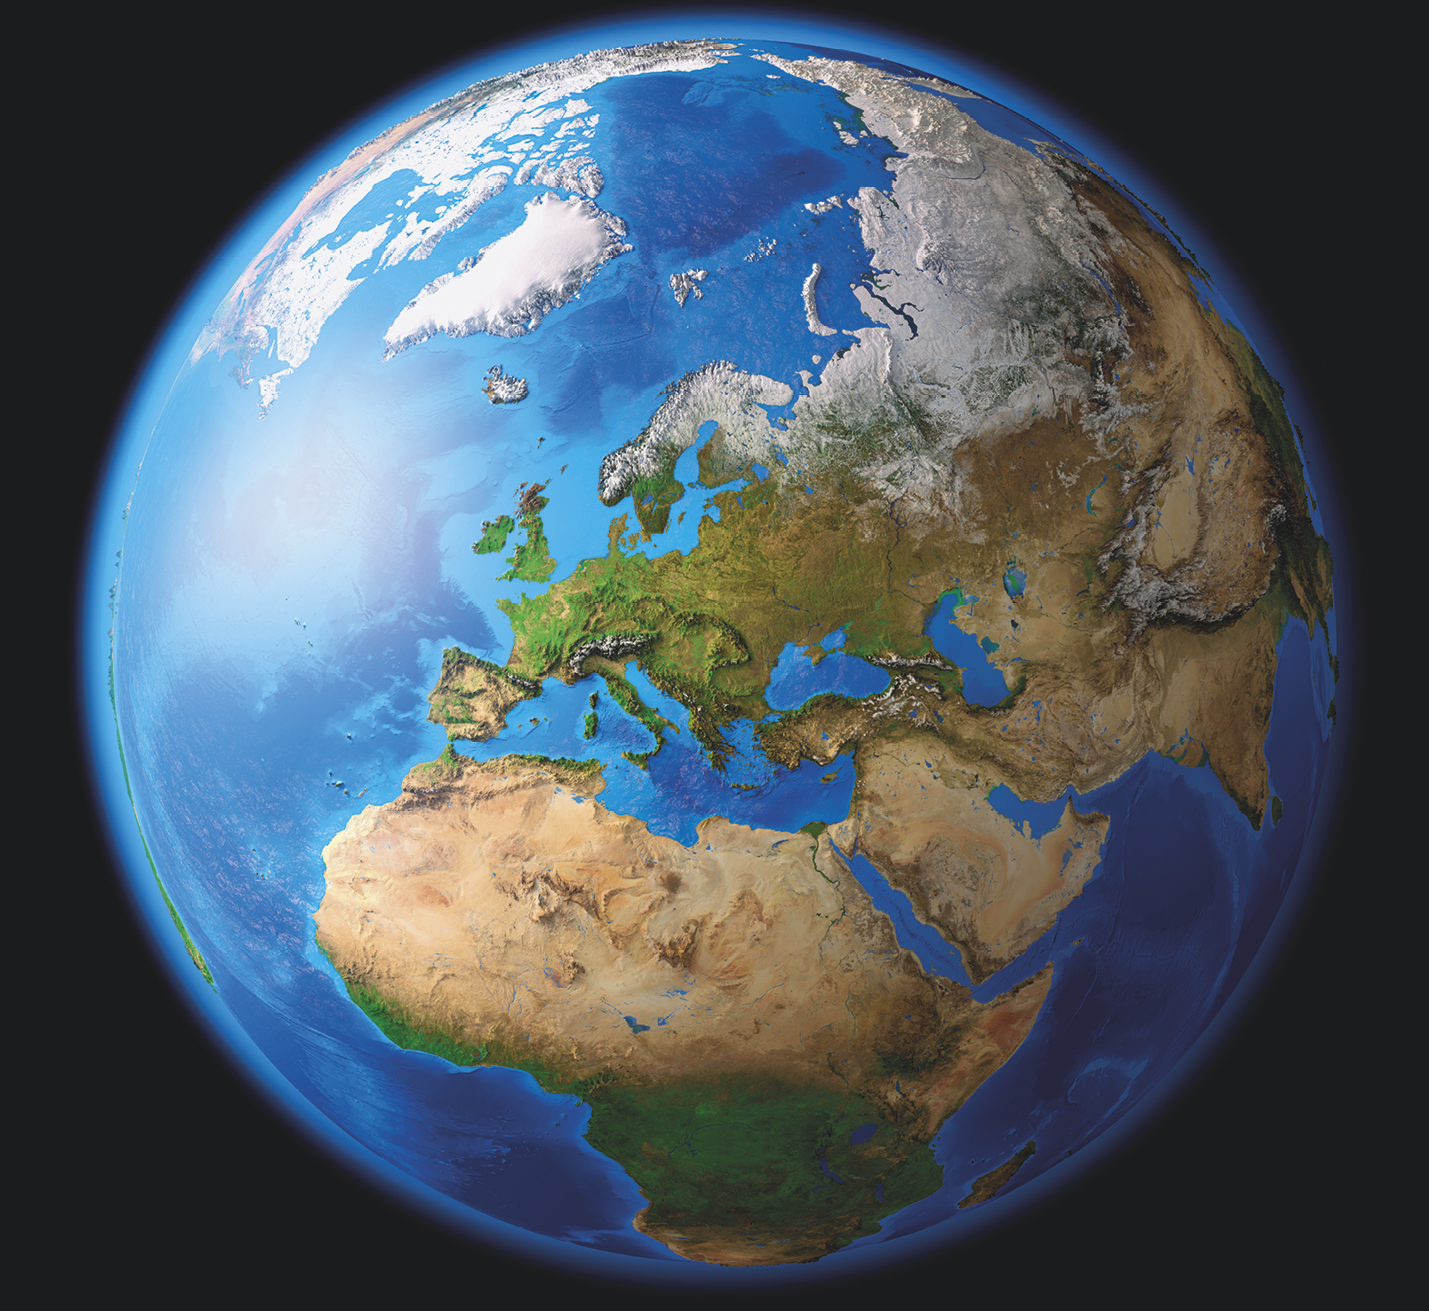 Imagem de satélite. Vista do planeta Terra com destaque para o continente europeu, norte da África, Península Arábica e o Ártico. Os oceanos e mares são apresentados em azul.